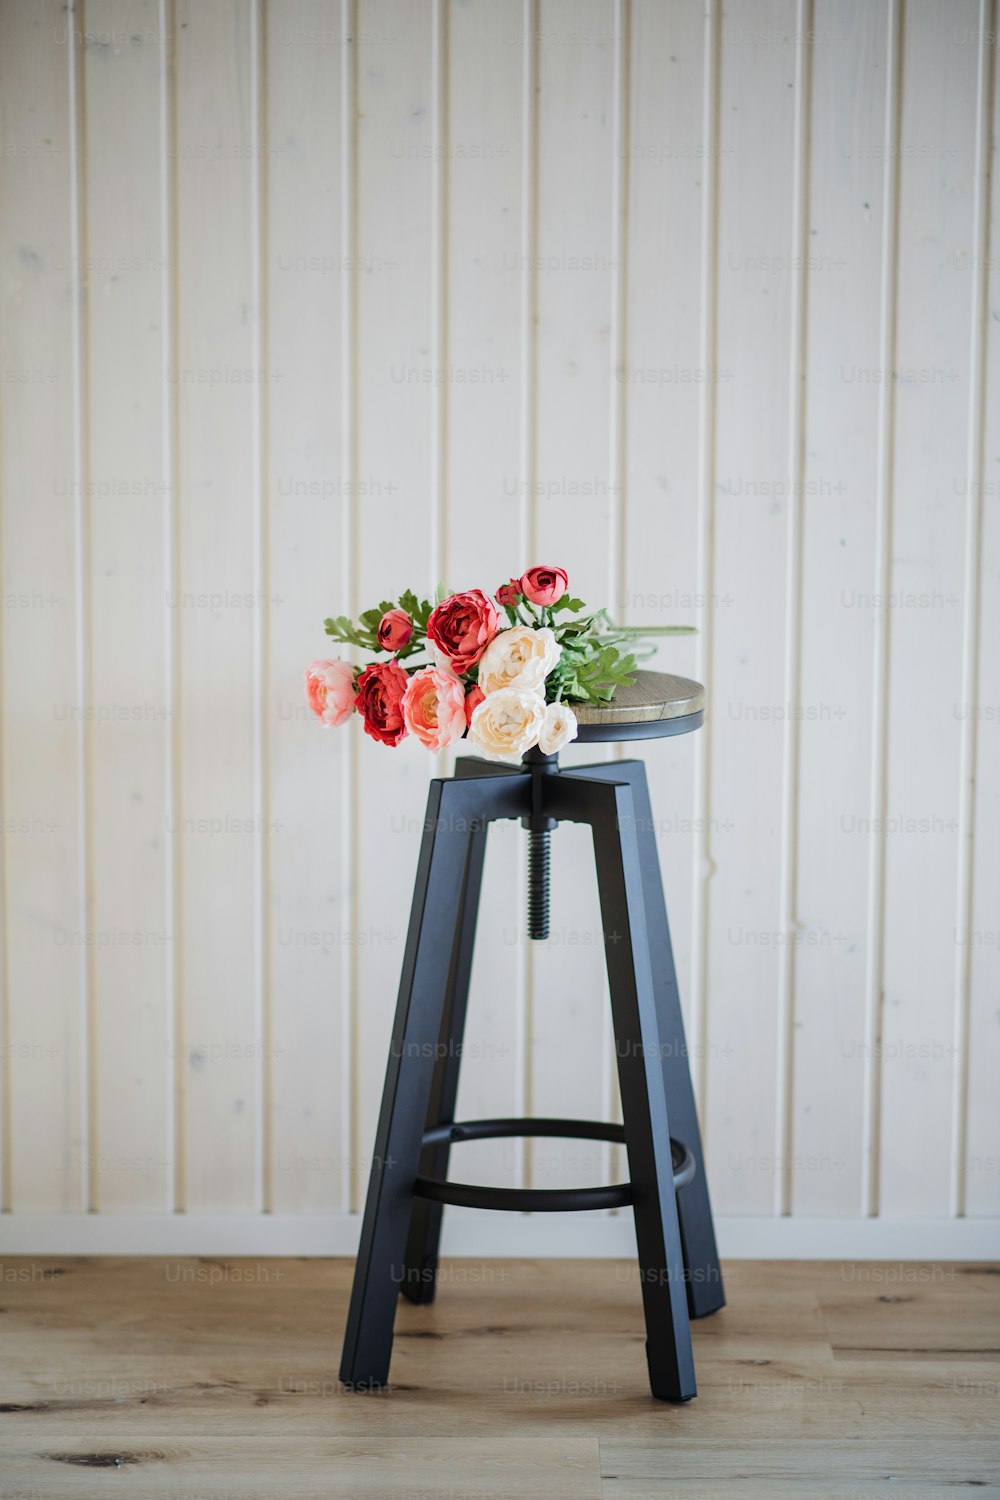 Un bouquet de fleurs sur un tabouret en bois contre un mur de fond blanc. Espace de copie.